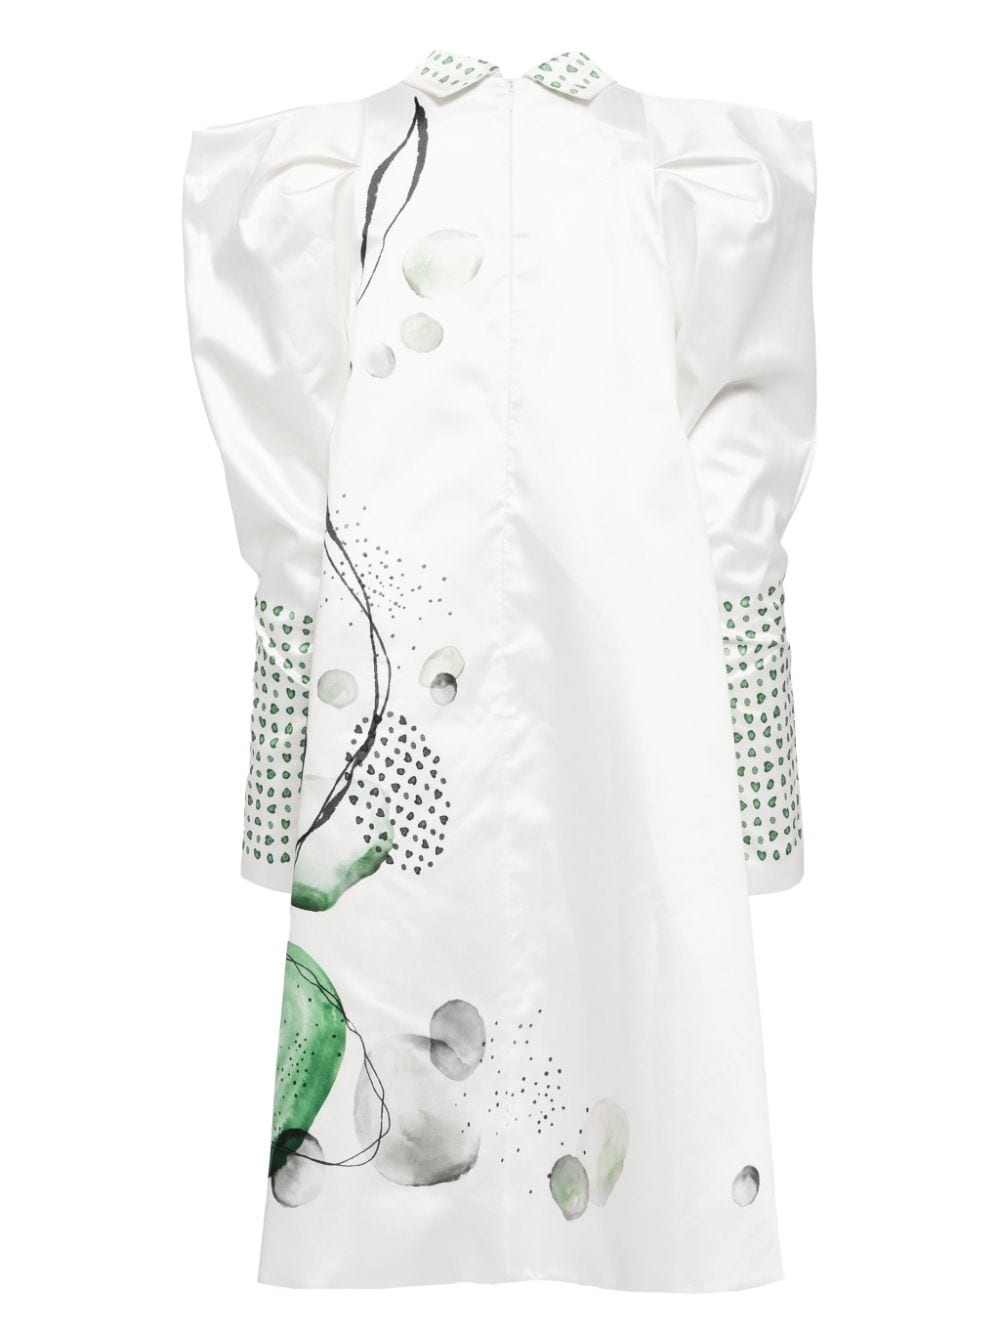 Saiid Kobeisy Midi-jurk met print - Wit